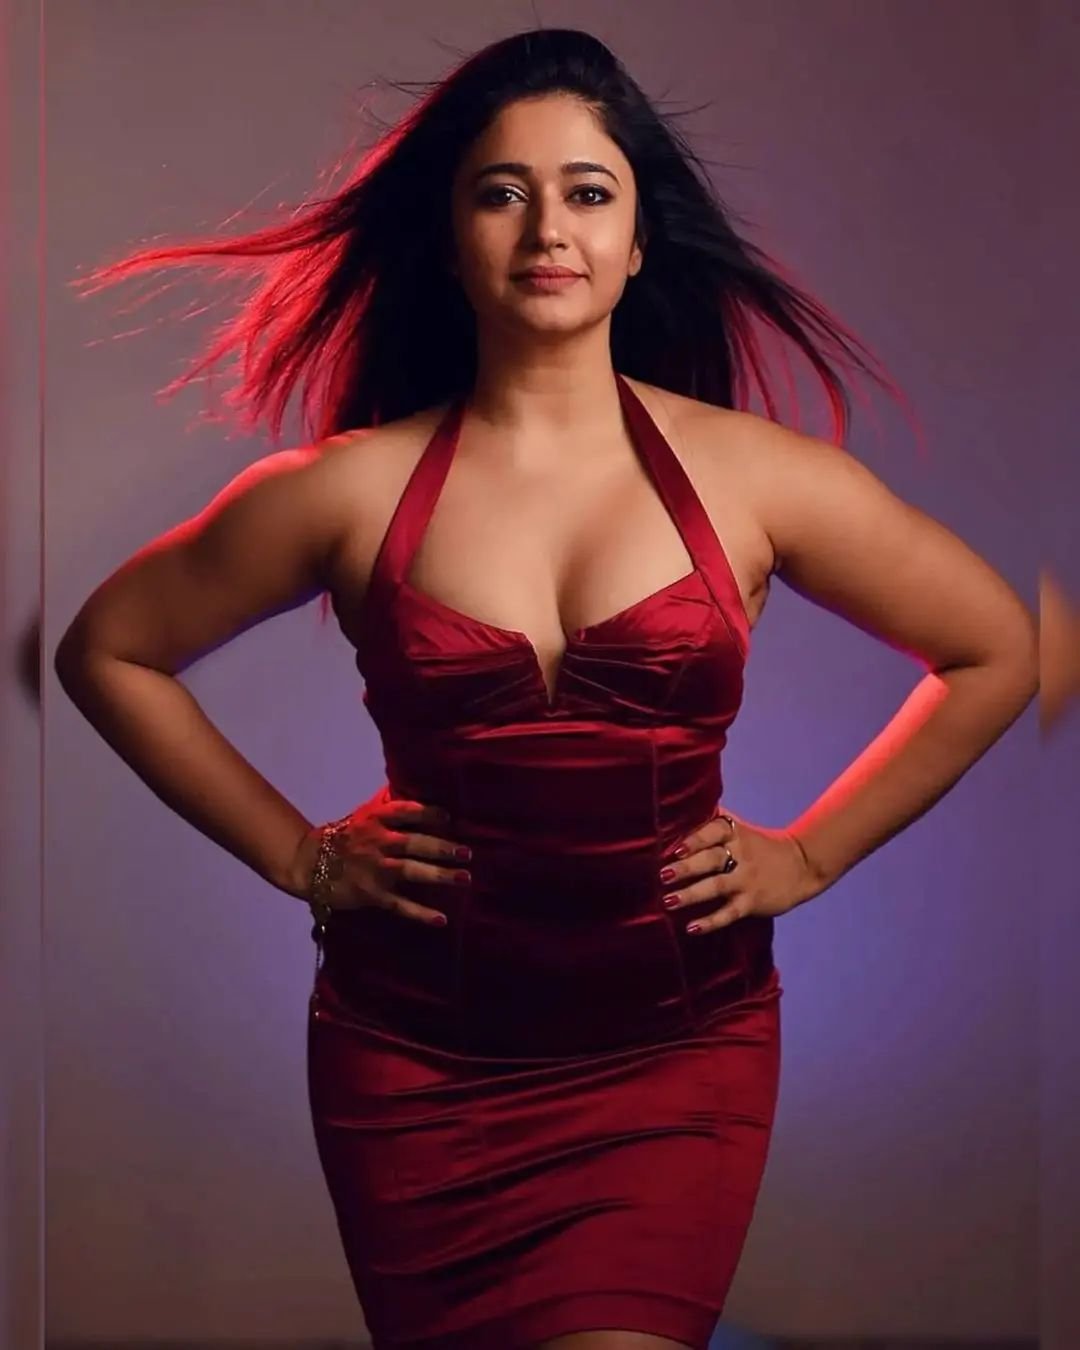 @poonambajwa555…celebrity model and actress hot photos